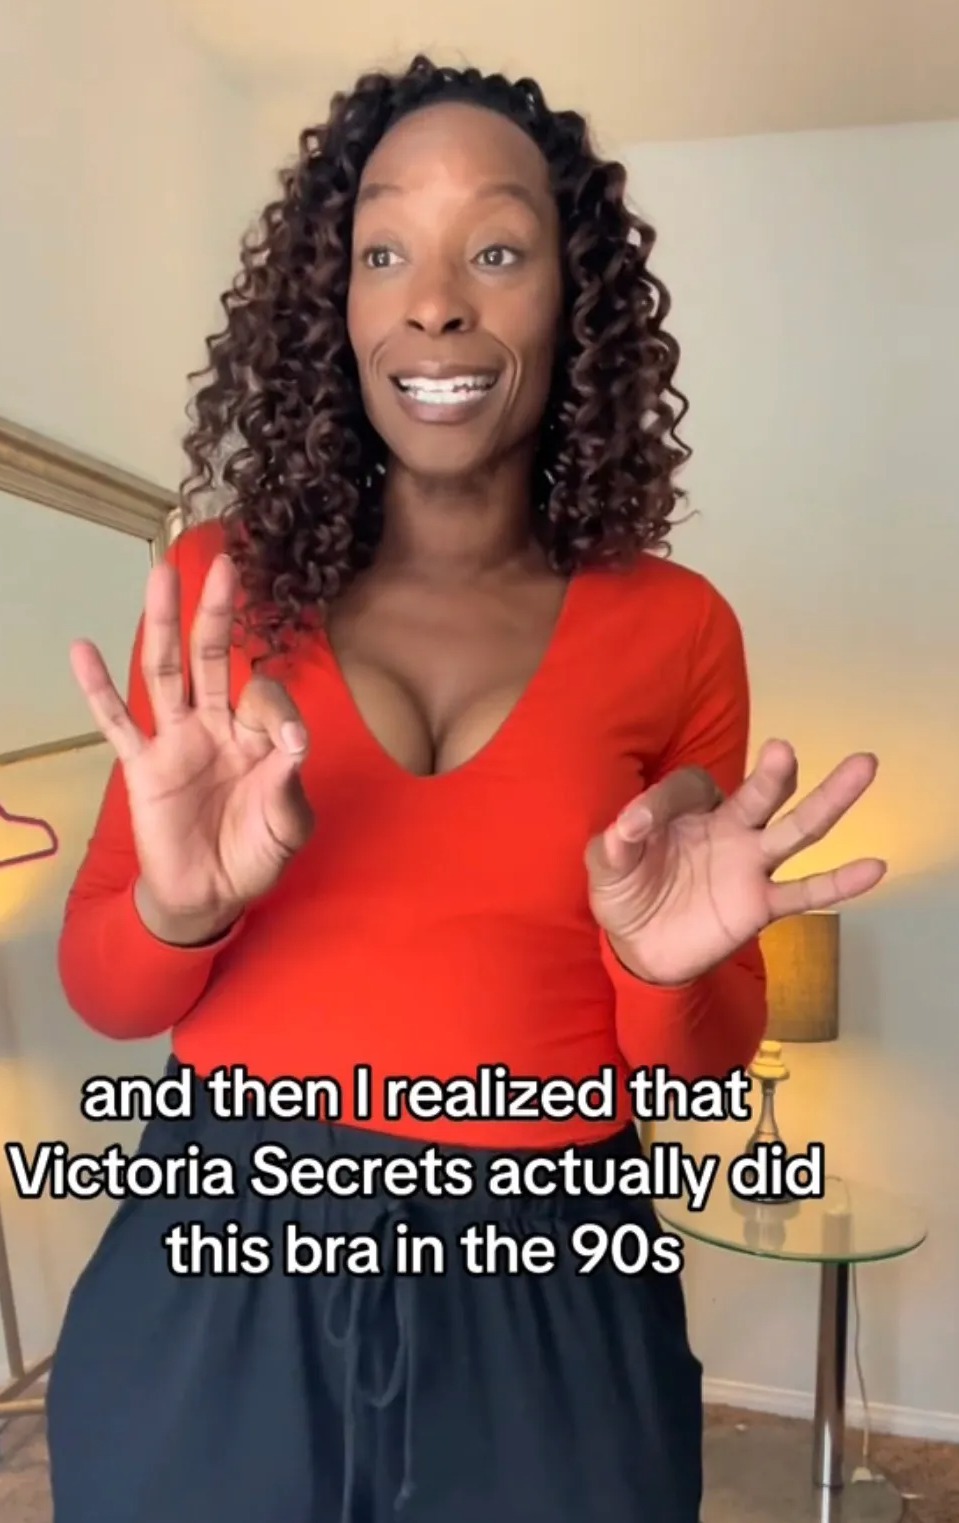 Nicola enthüllte, dass Victoria's Secret in den 1990er Jahren einen ähnlichen BH mit falschen Brustwarzen an den Körbchen verkaufte